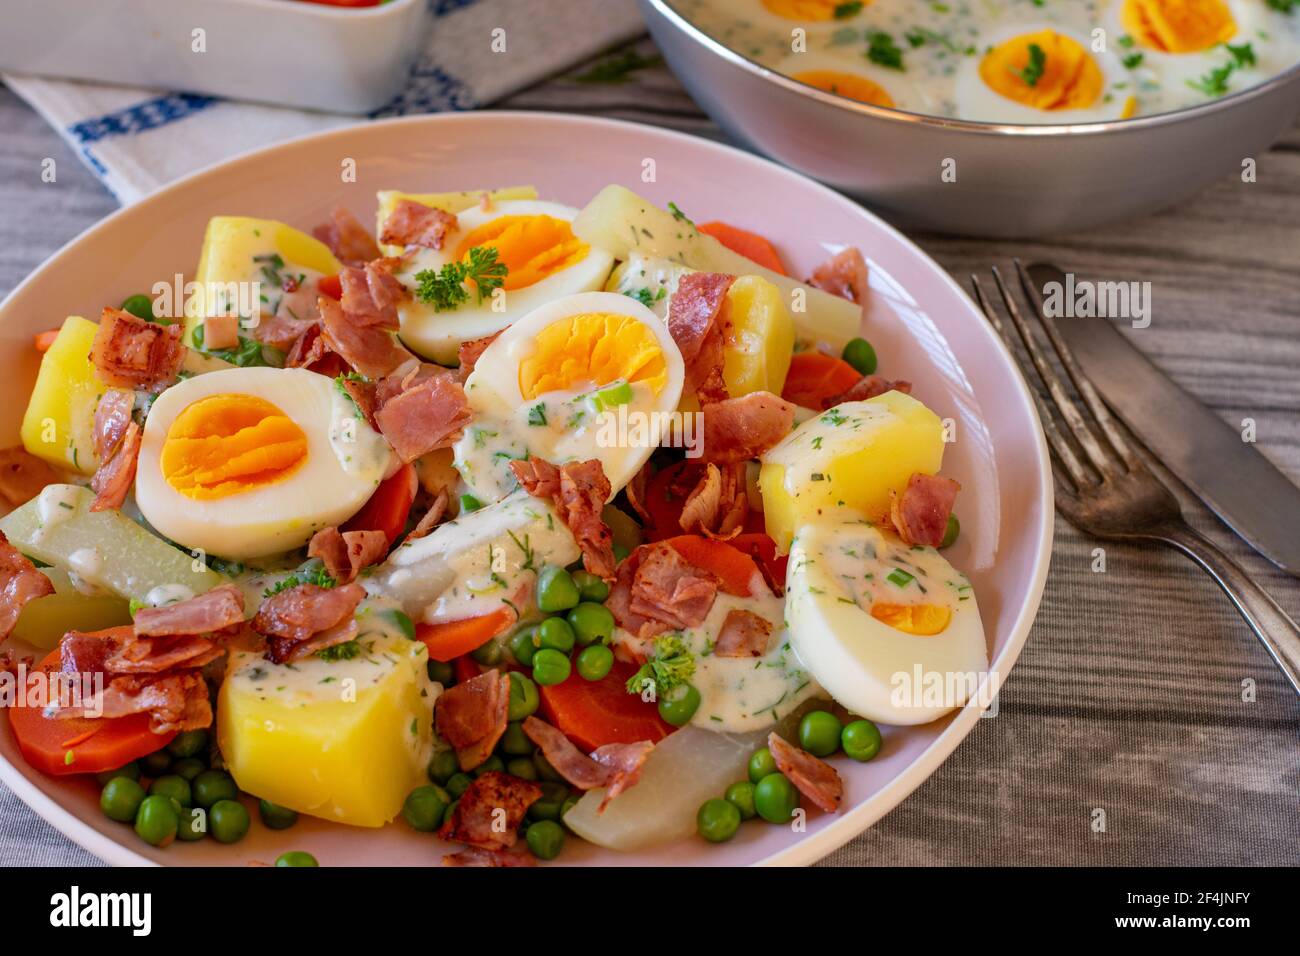 Köstliche Eierspeise mit gekochten halbierten Eiern, gebratenem Schinken, Gemüse, Kartoffeln in einer leckeren Kräutersauce serviert auf einem Teller auf dem Küchentisch Stockfoto